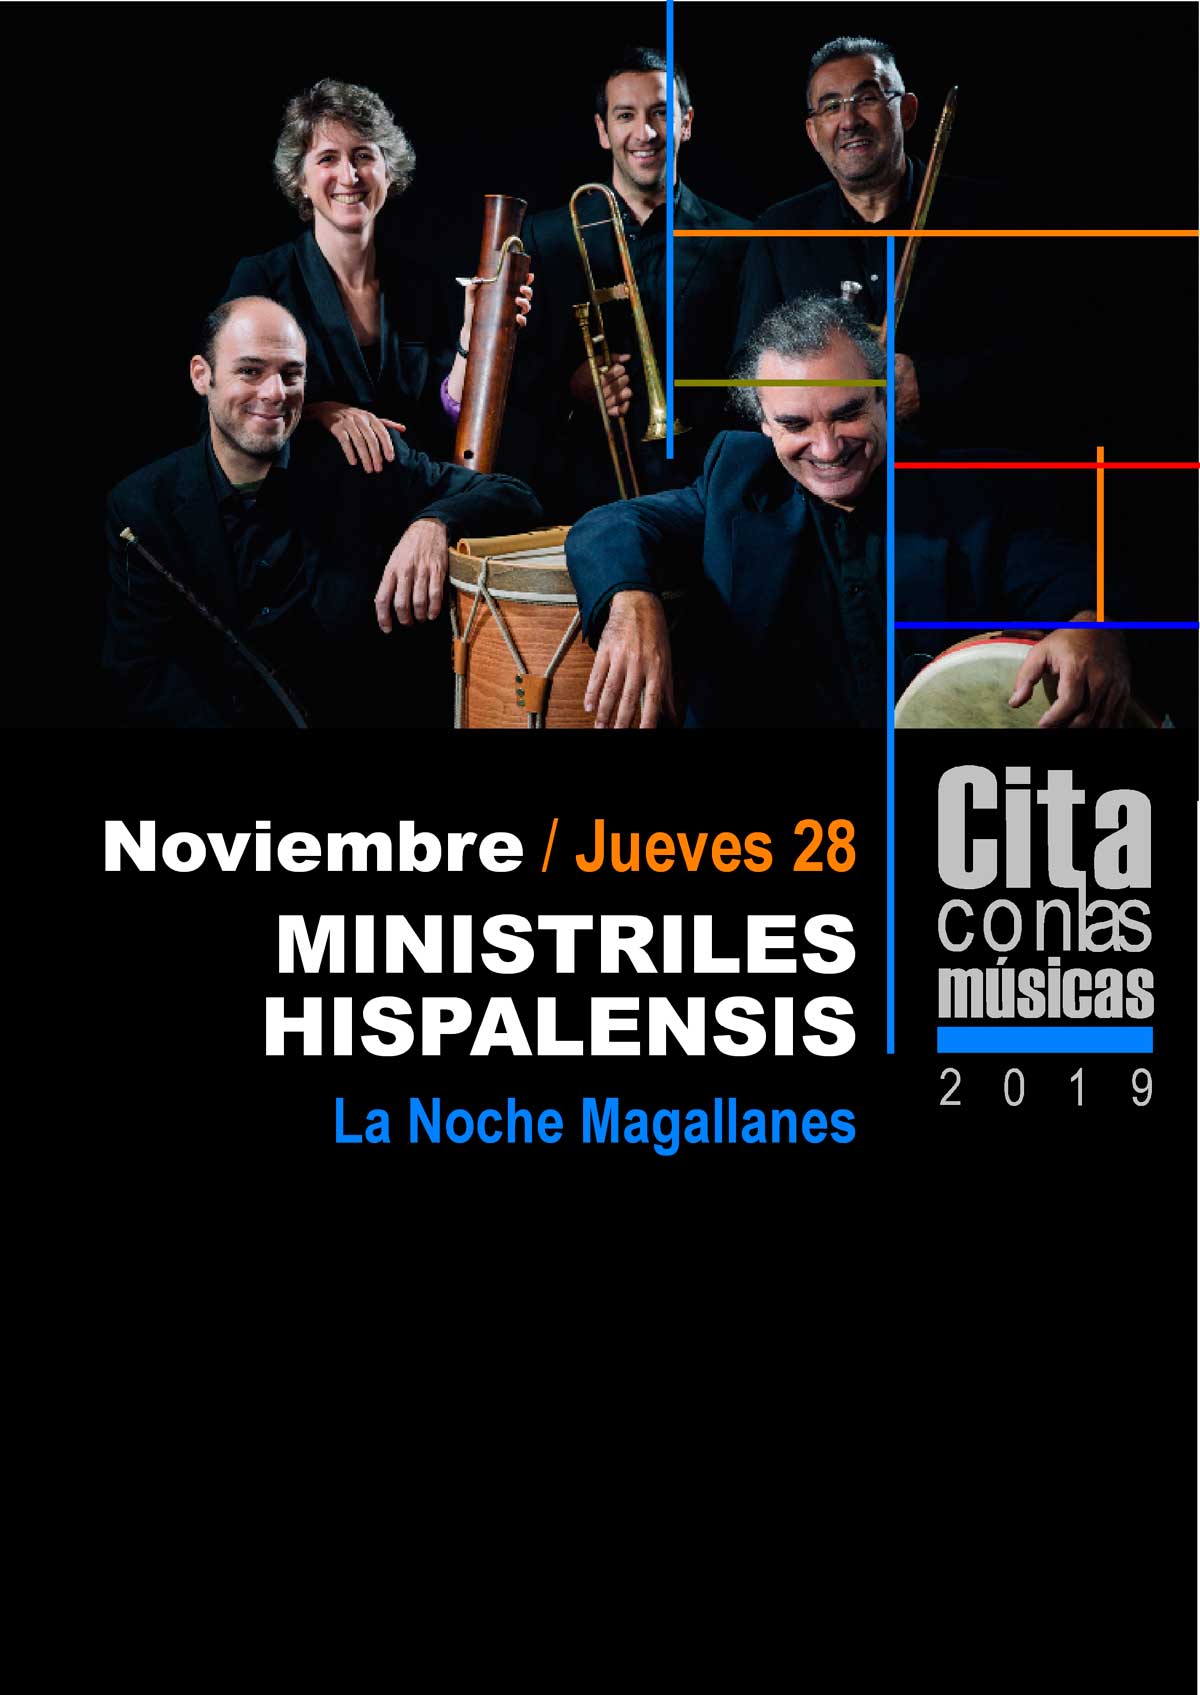 Cartel de 'Cita con las Músicas' 2019 con actuación de Ministriles Hispalensis en Sevilla